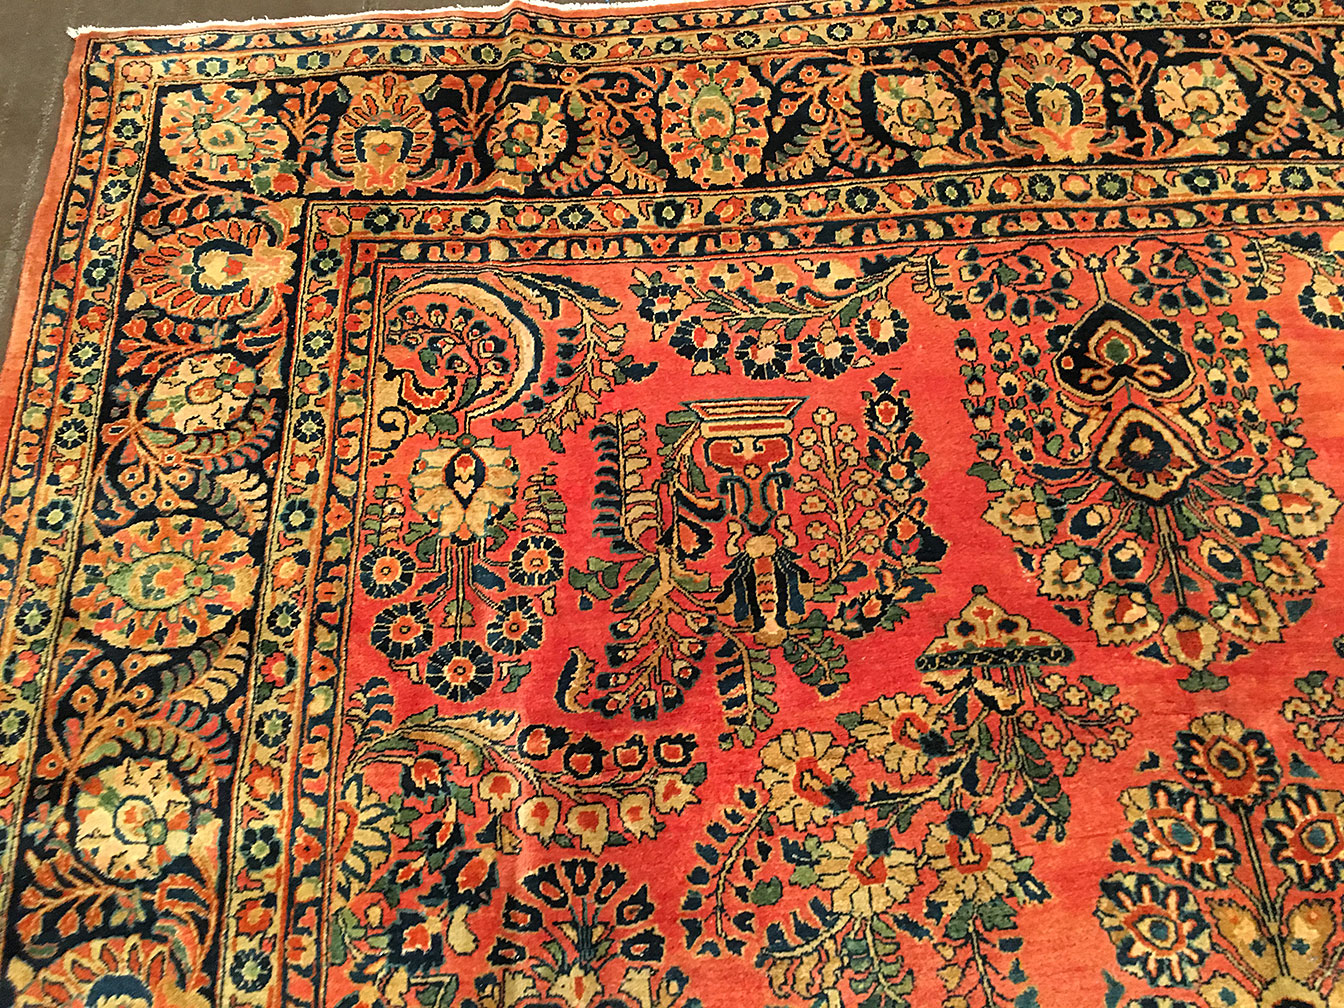 Antique sarouk Carpet - # 51021